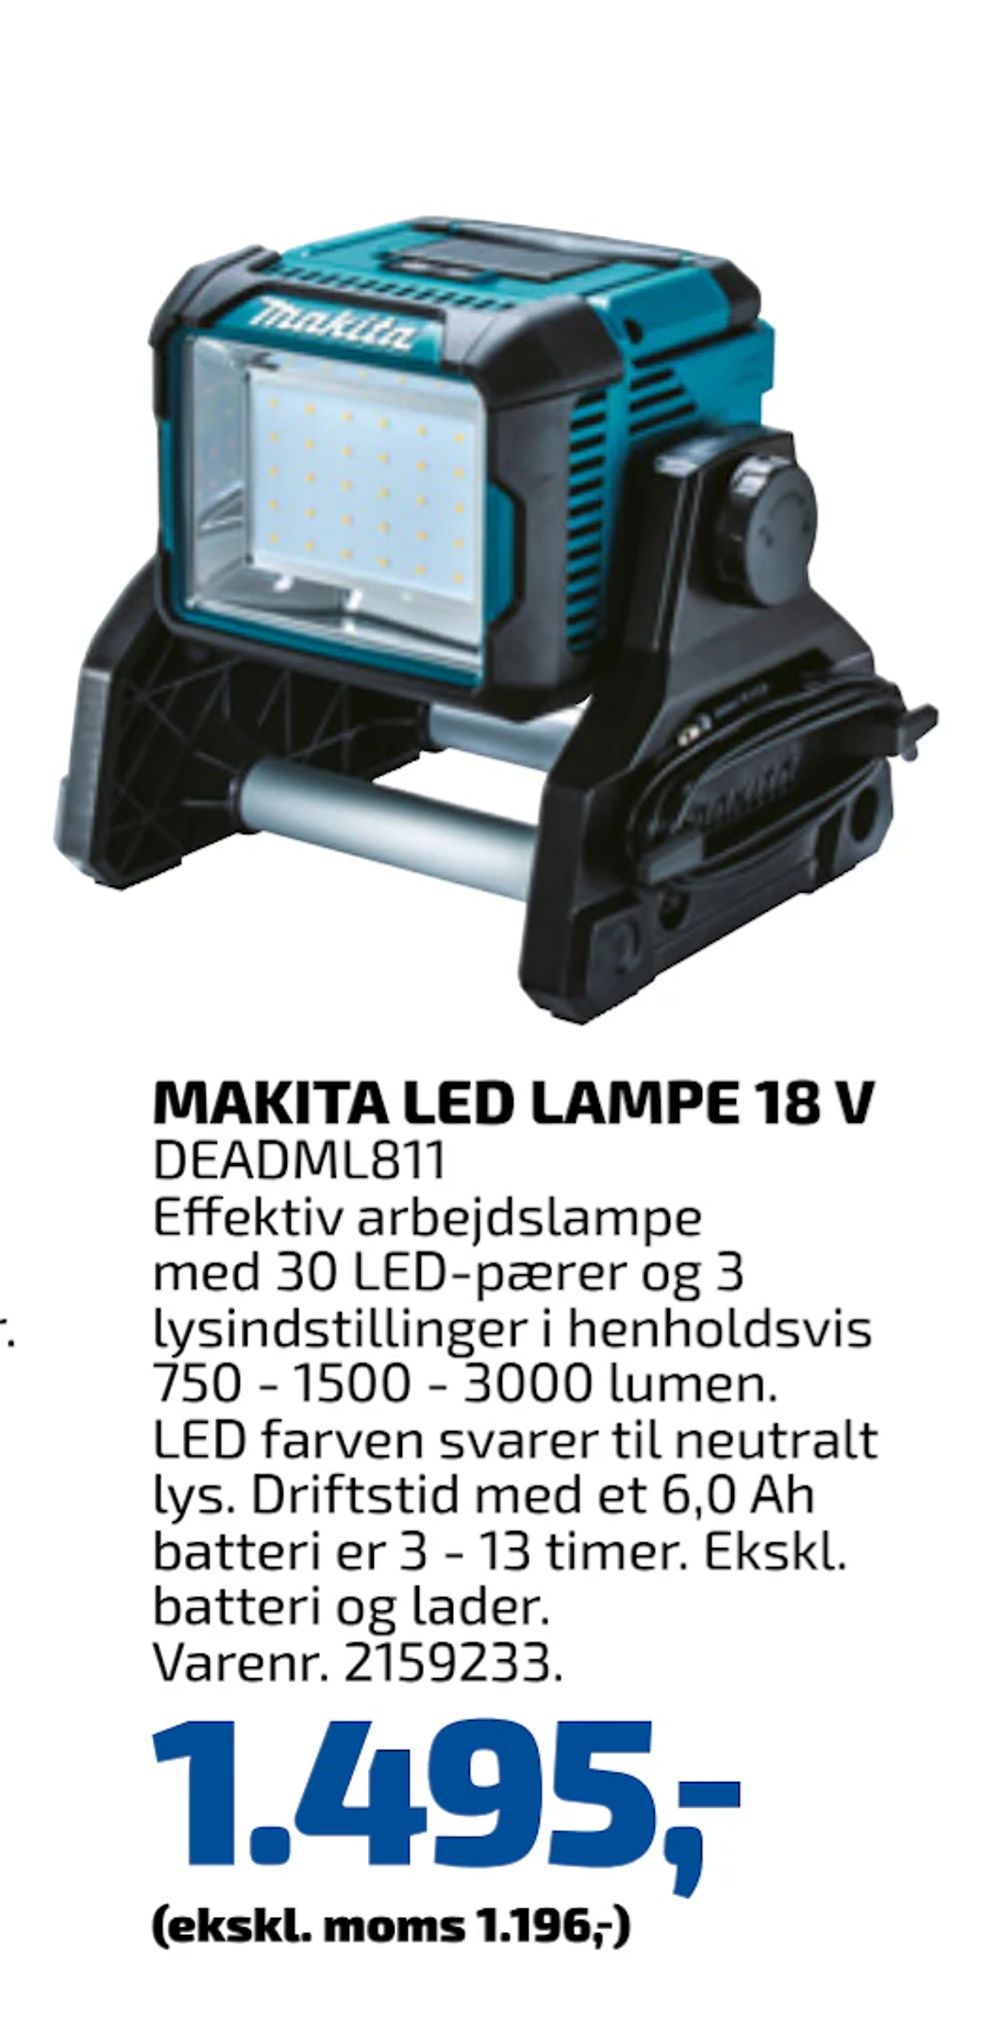 Tilbud på MAKITA LED LAMPE 18 V fra Davidsen til 1.495 kr.